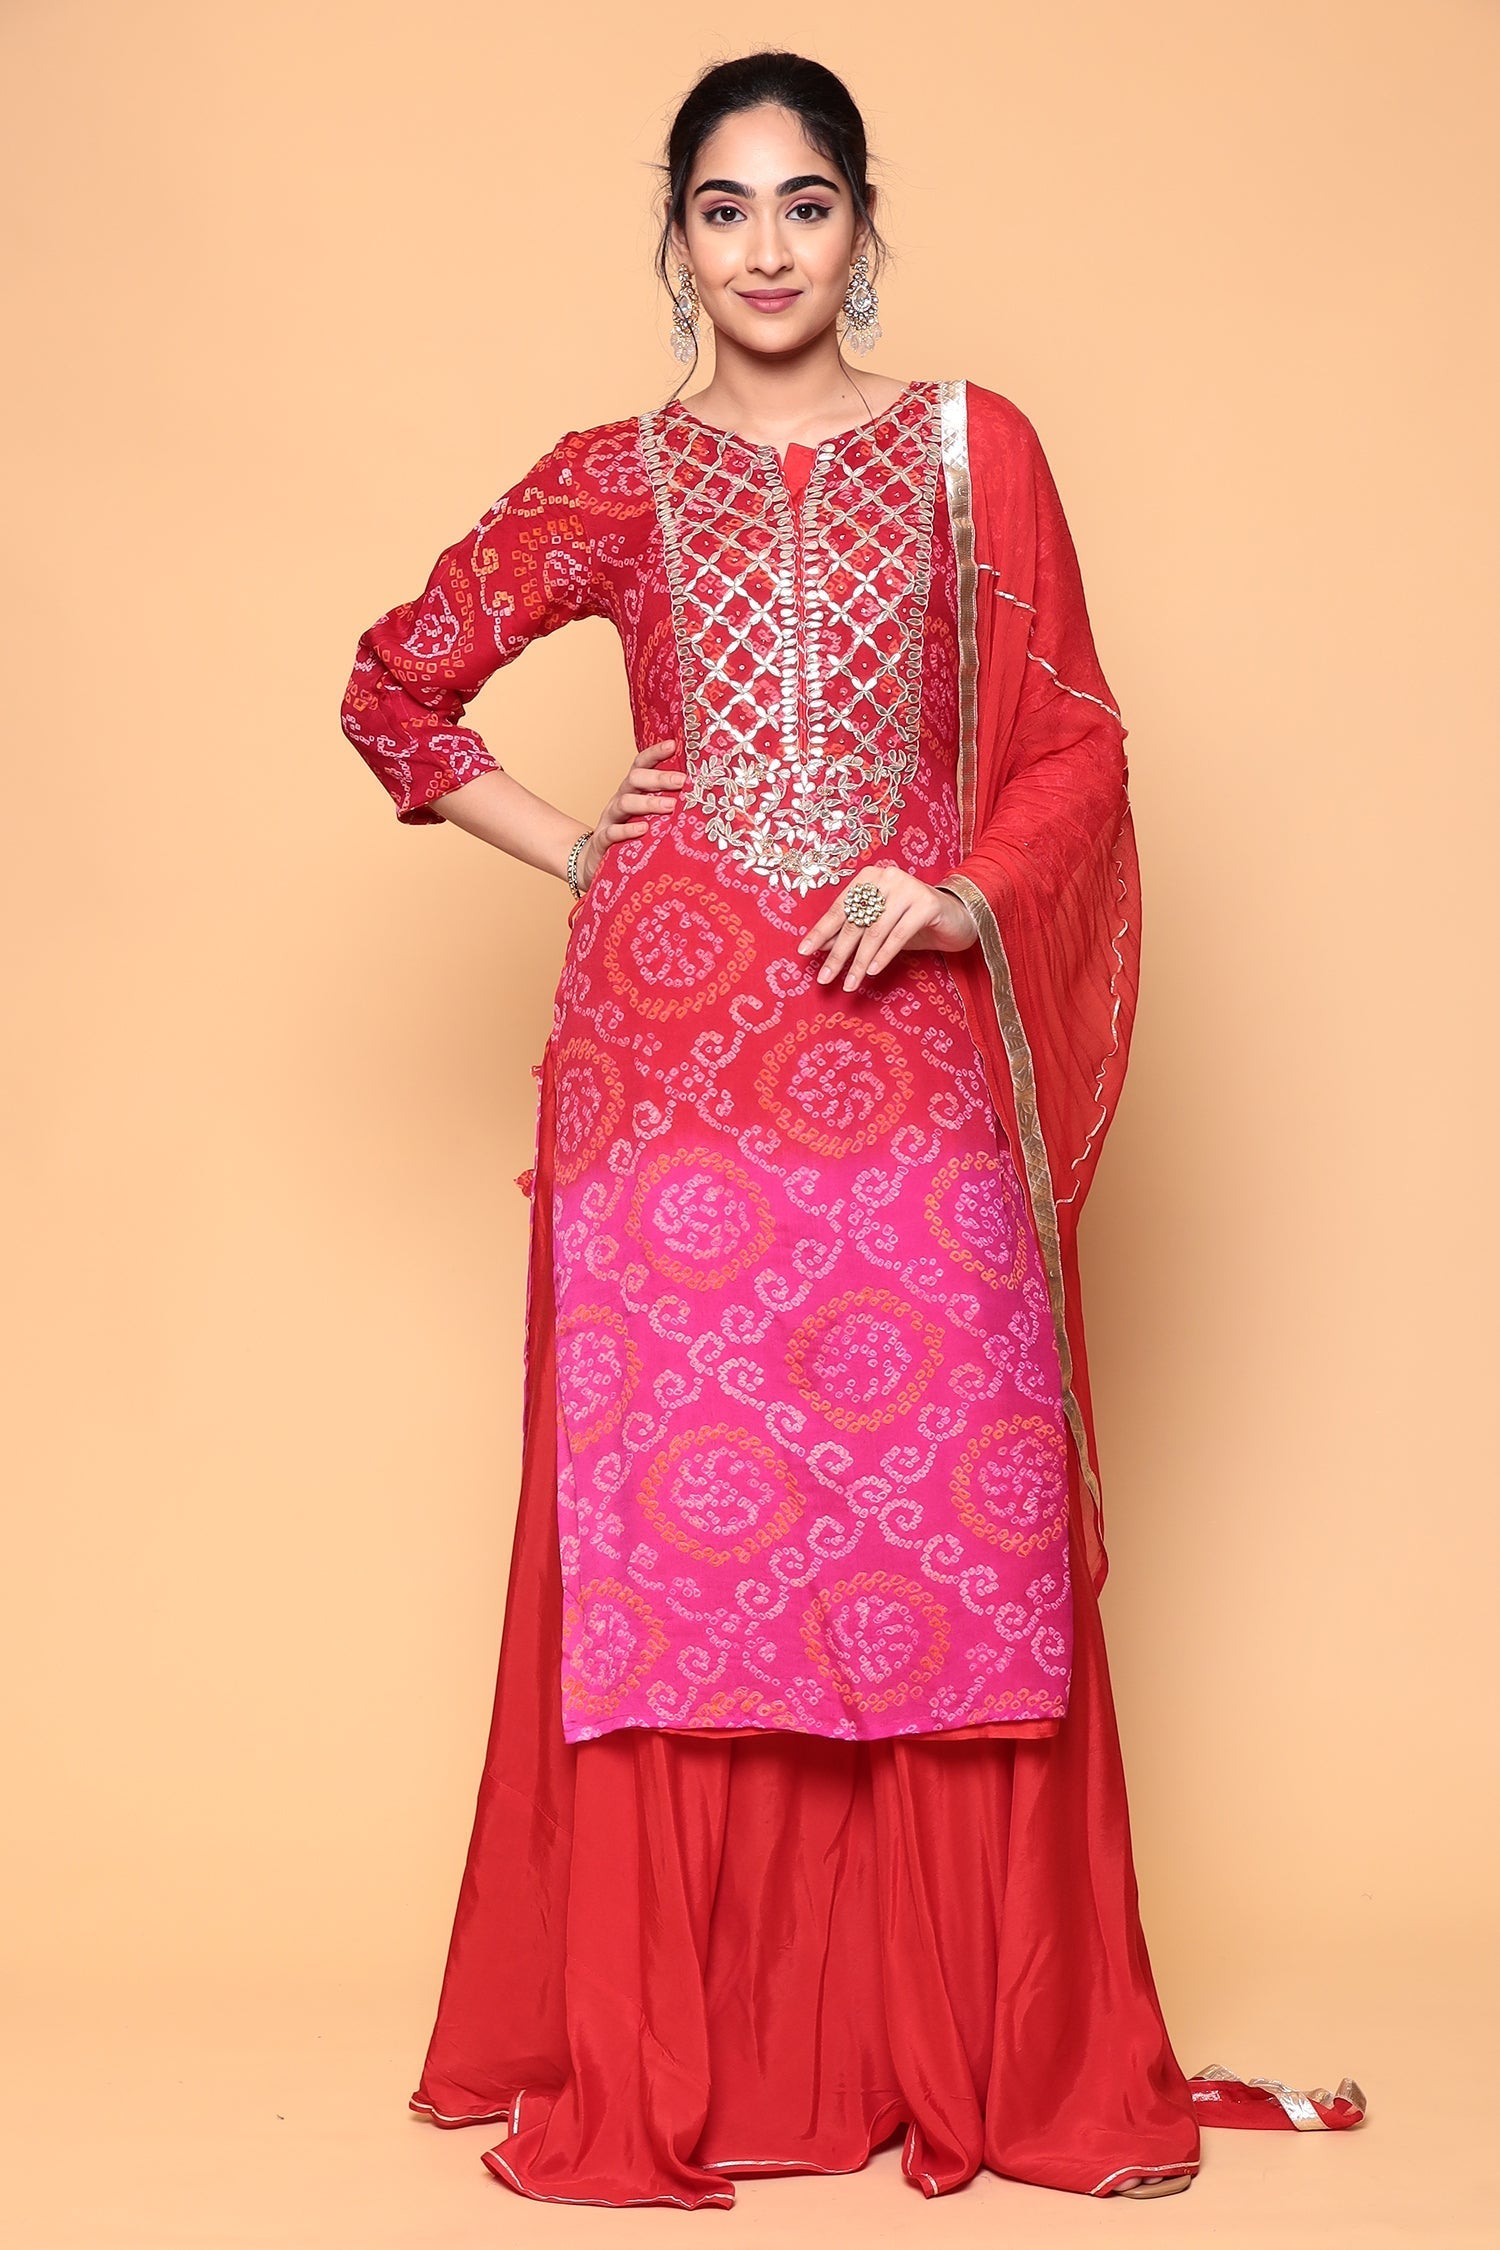 Red Sharara salwar suit, Sharara dress, salwar kameez, Pakistani Wedding  Dresses | eBay